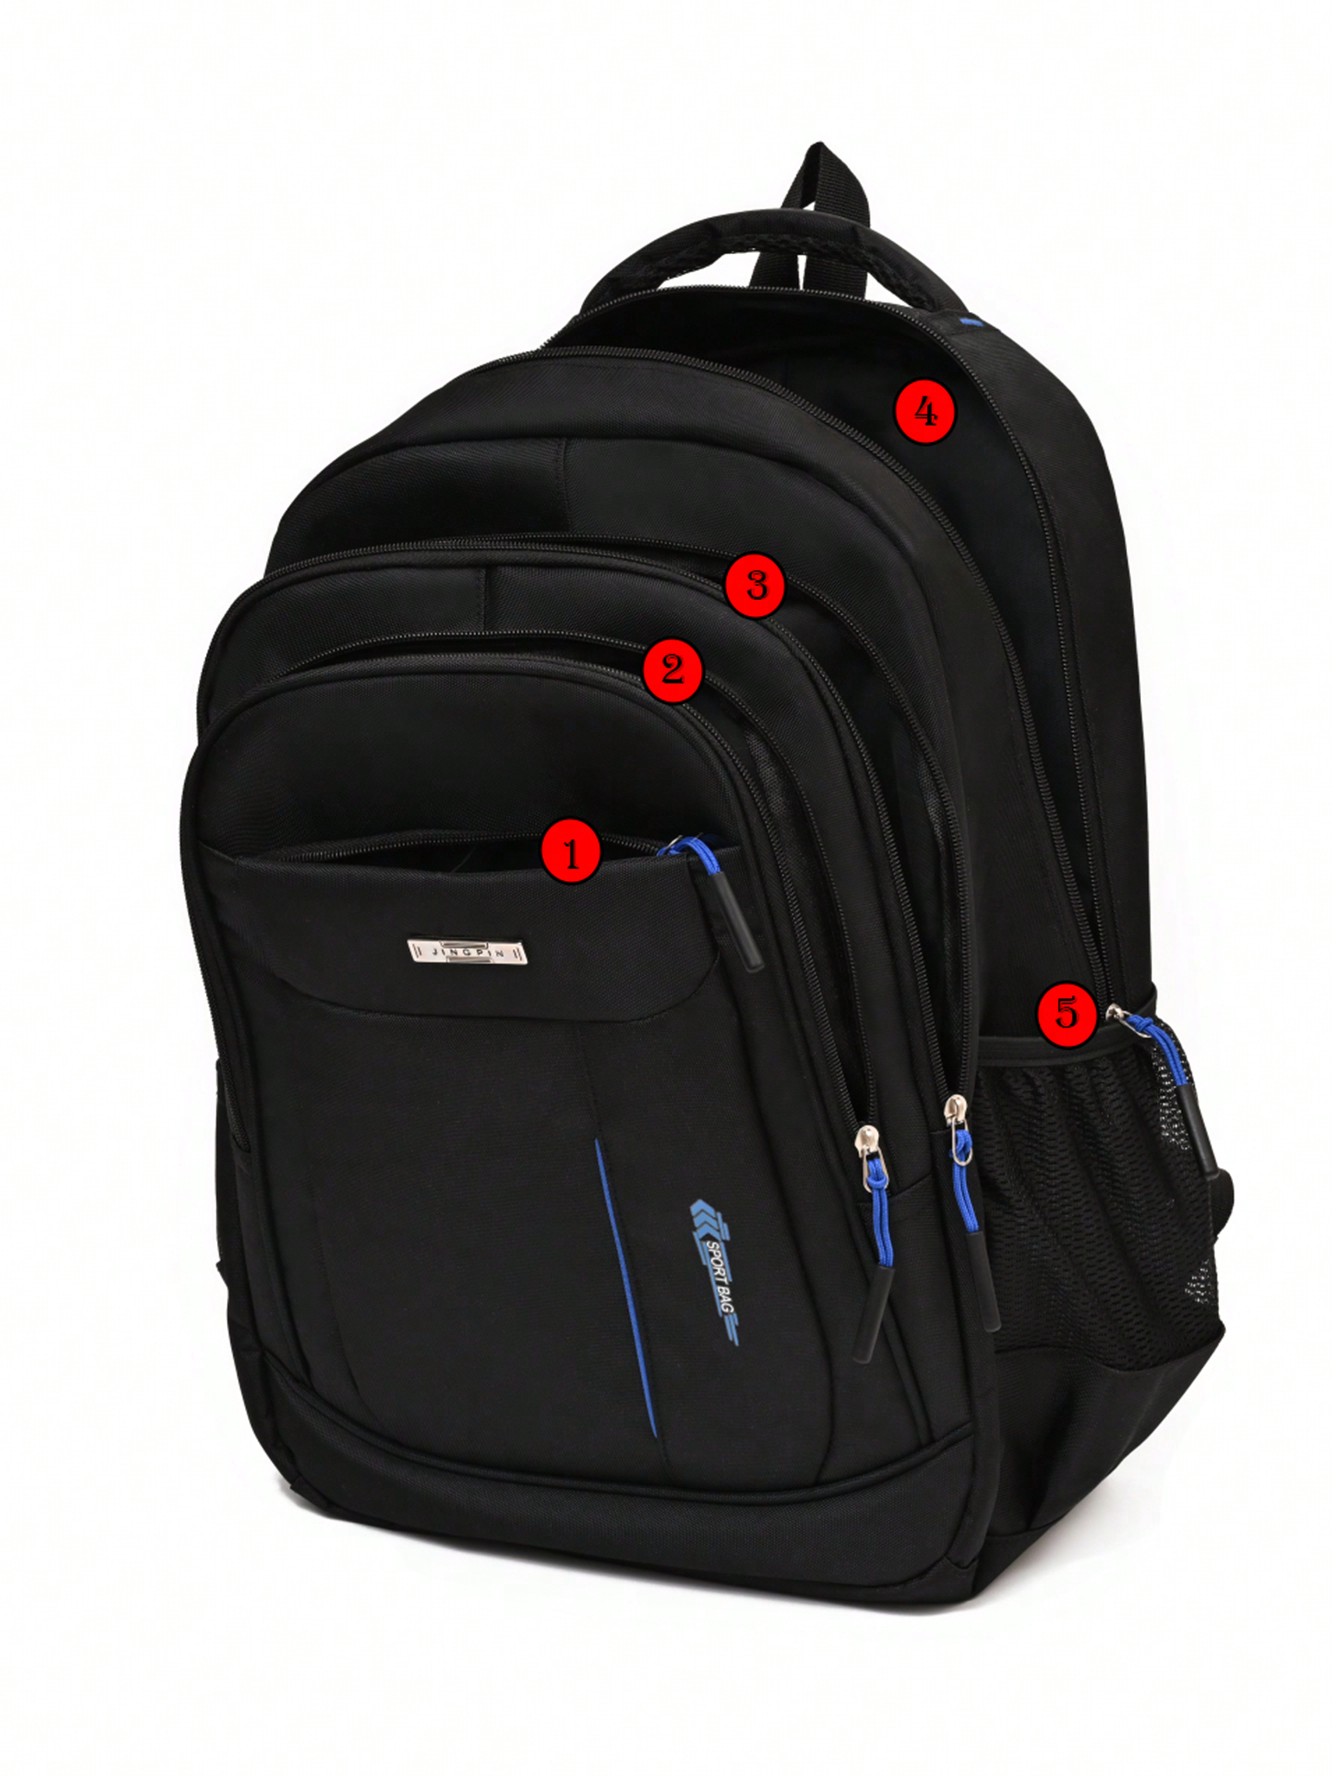 Усиленная водонепроницаемая сумка большой вместимости, синий новый мужской рюкзак компьютерные сумки школьная студенческая сумка для студентов колледжа вместительная повседневная дорожная сумка д